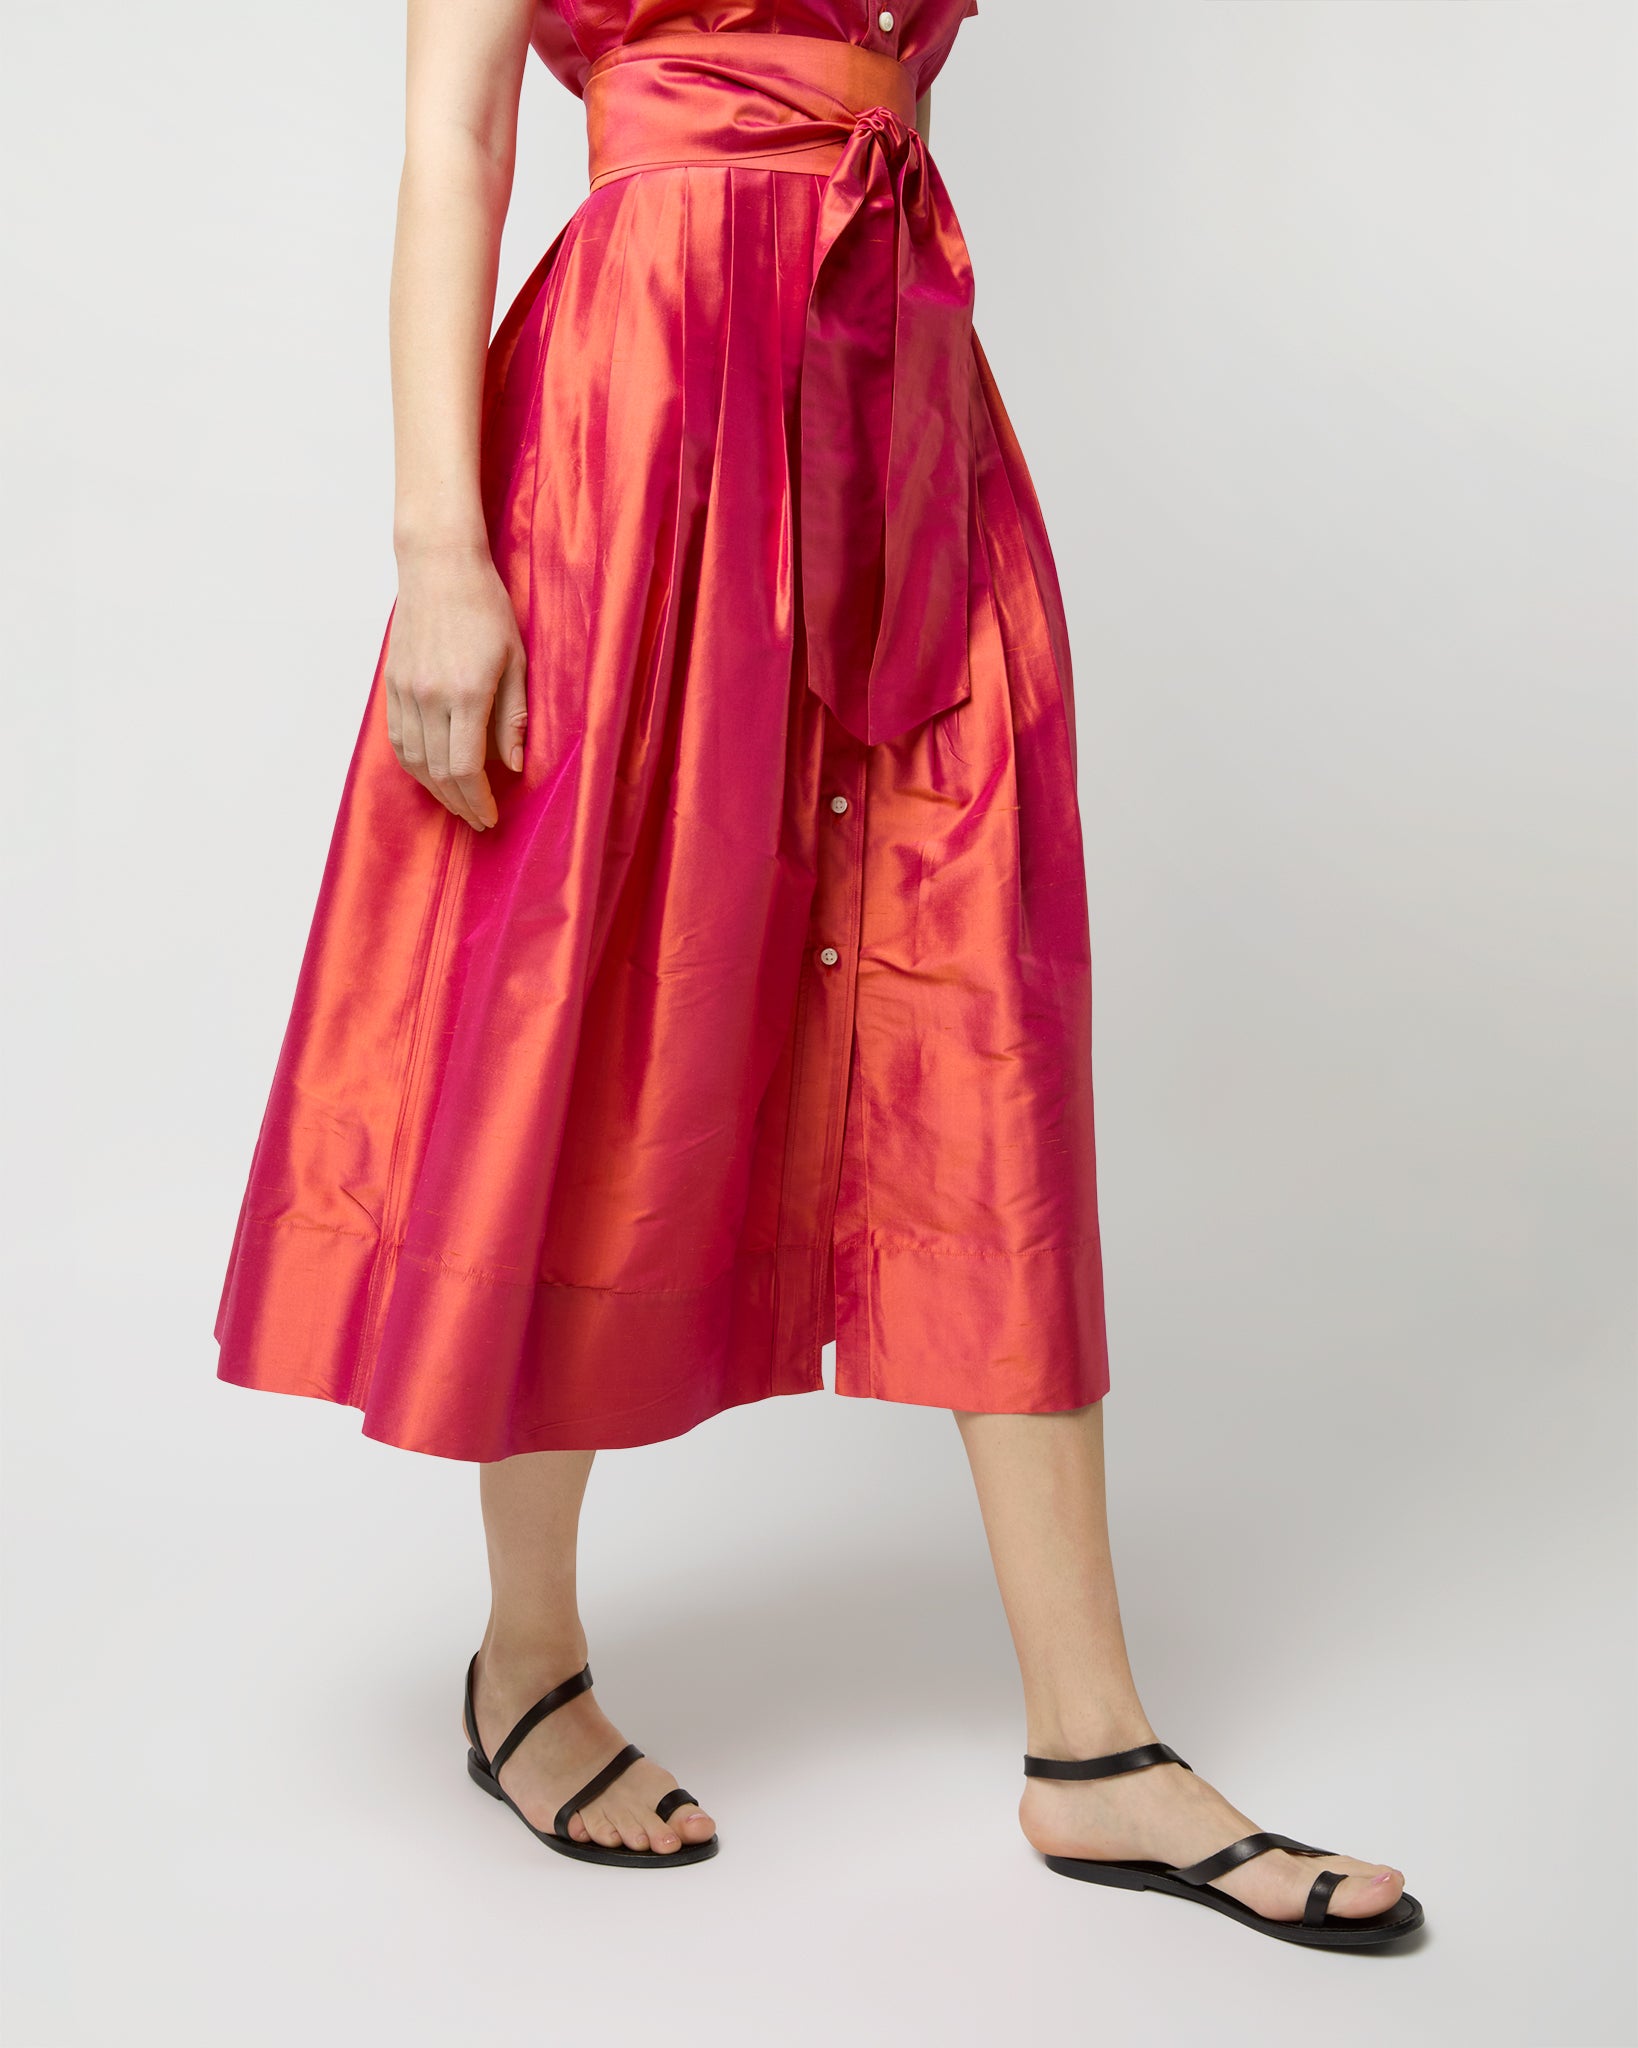 Short-Sleeved Classic Shirtwaist Dress in Tomato Iridescent Silk Shantung